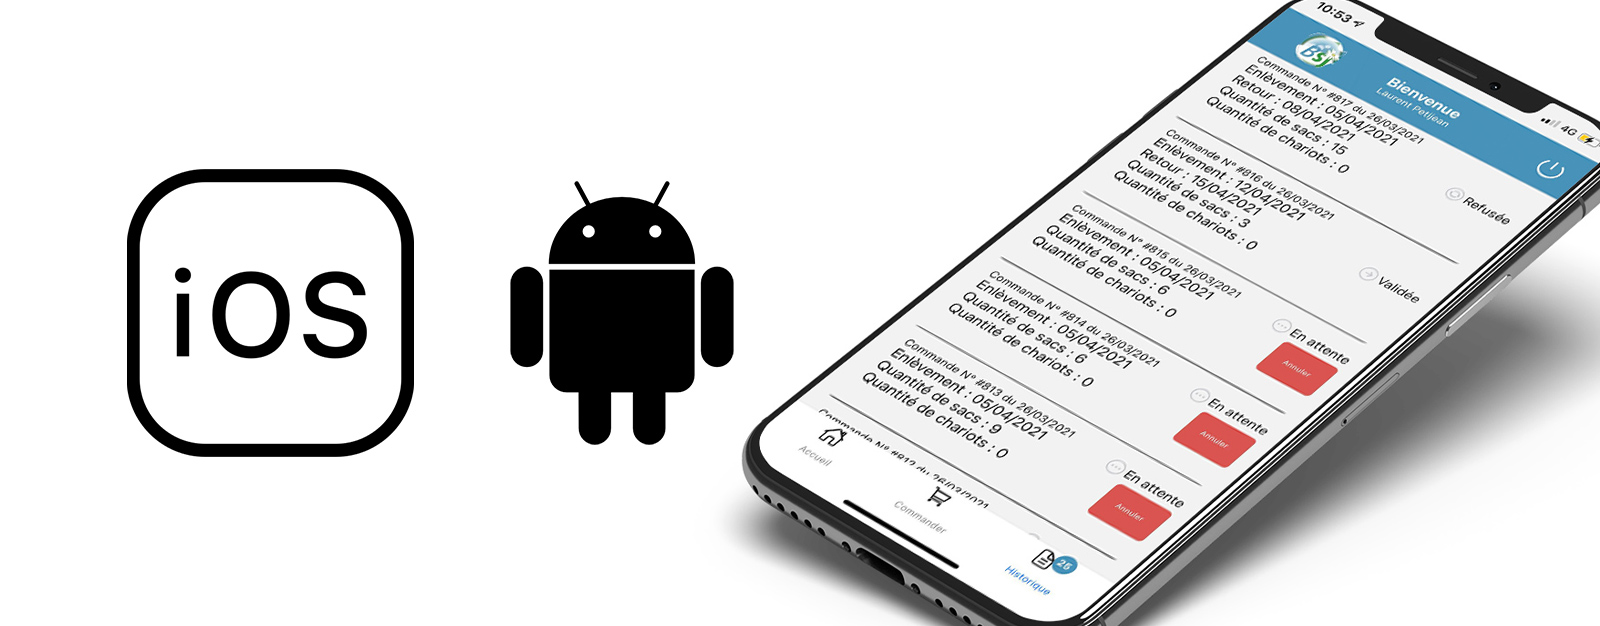 Logos ios et androïd avec un smartphone sur l'application mobile BSJ Sud